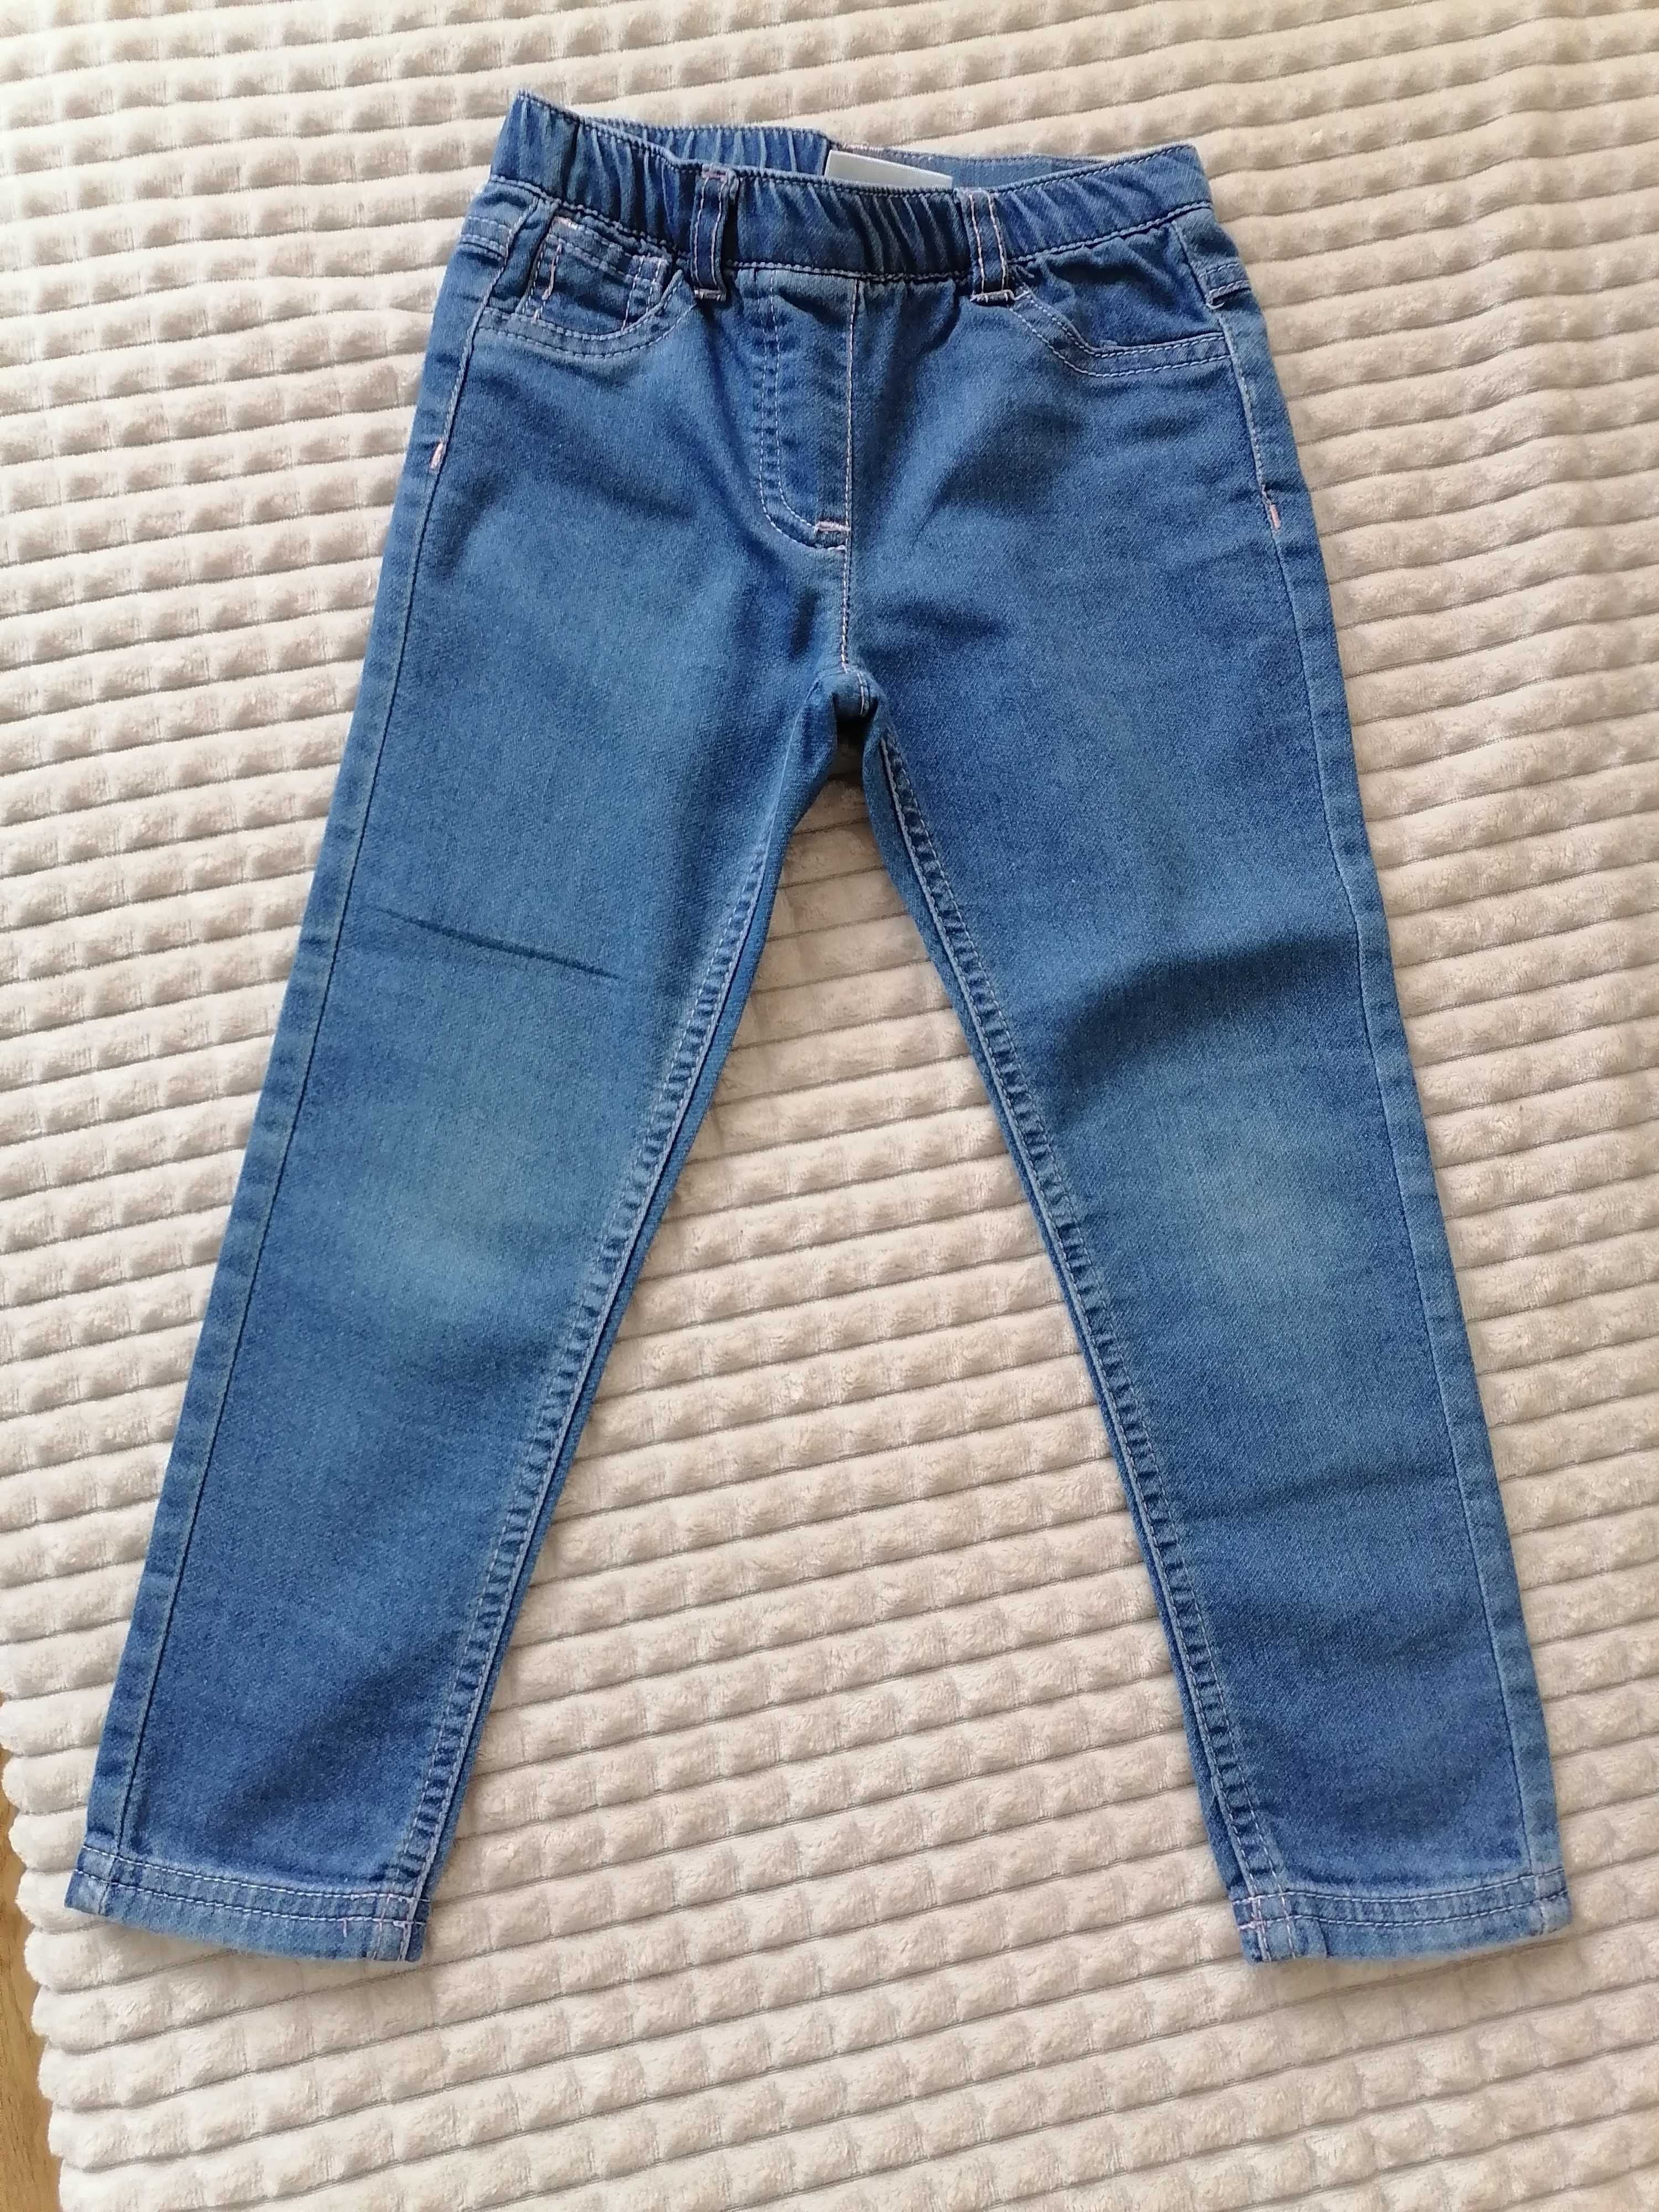 Super spodnie jeansowe coccordillo dla Małej Miss, miękkie,wygodne.